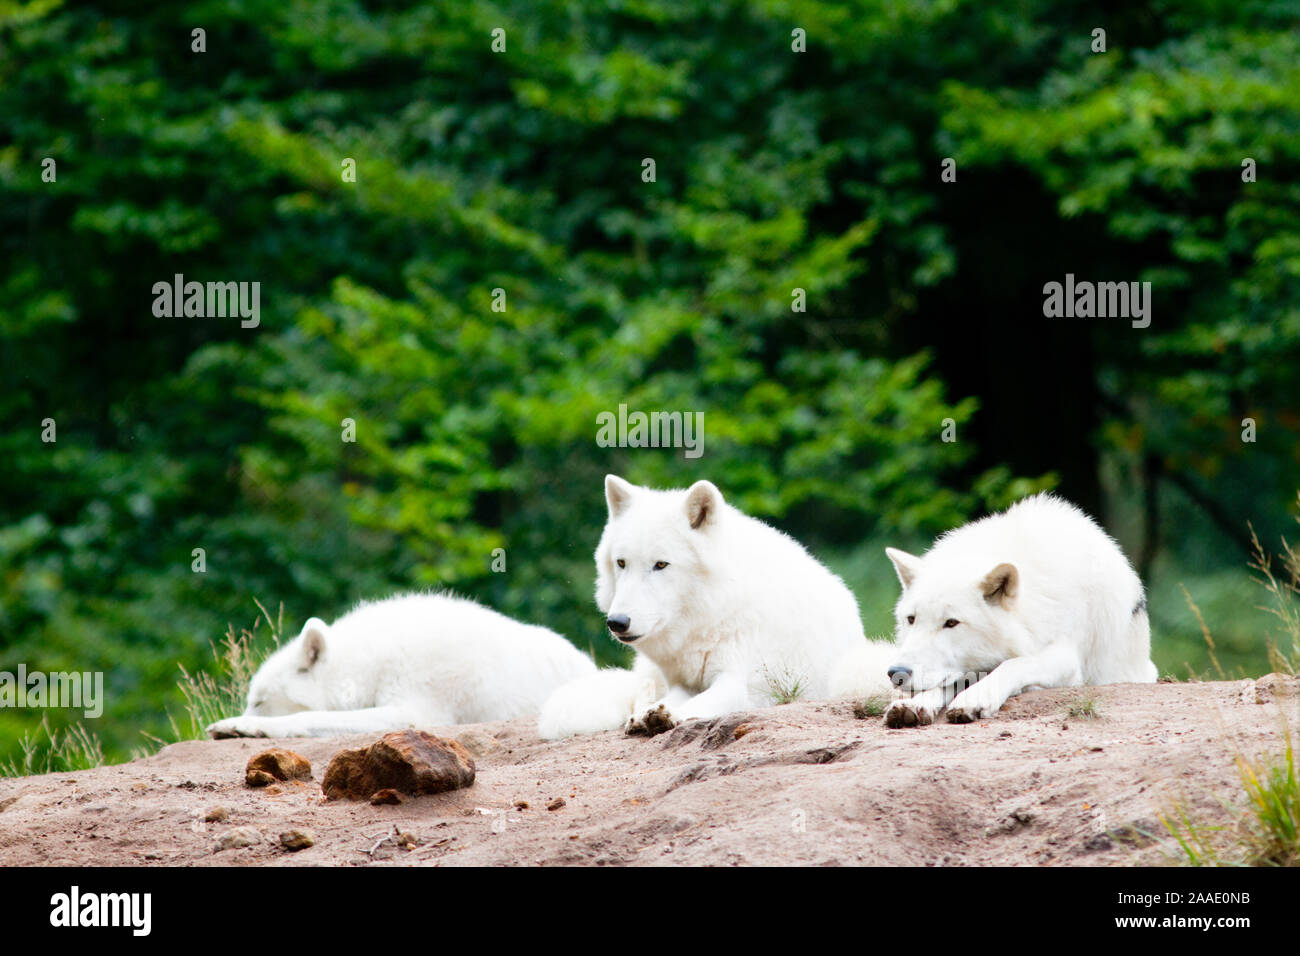 Tundrawölfe,Canis lupus albus, bei Veröffentlichung angeben: Wildpark Alte Fasanerie Klein-Auheim Stock Photo